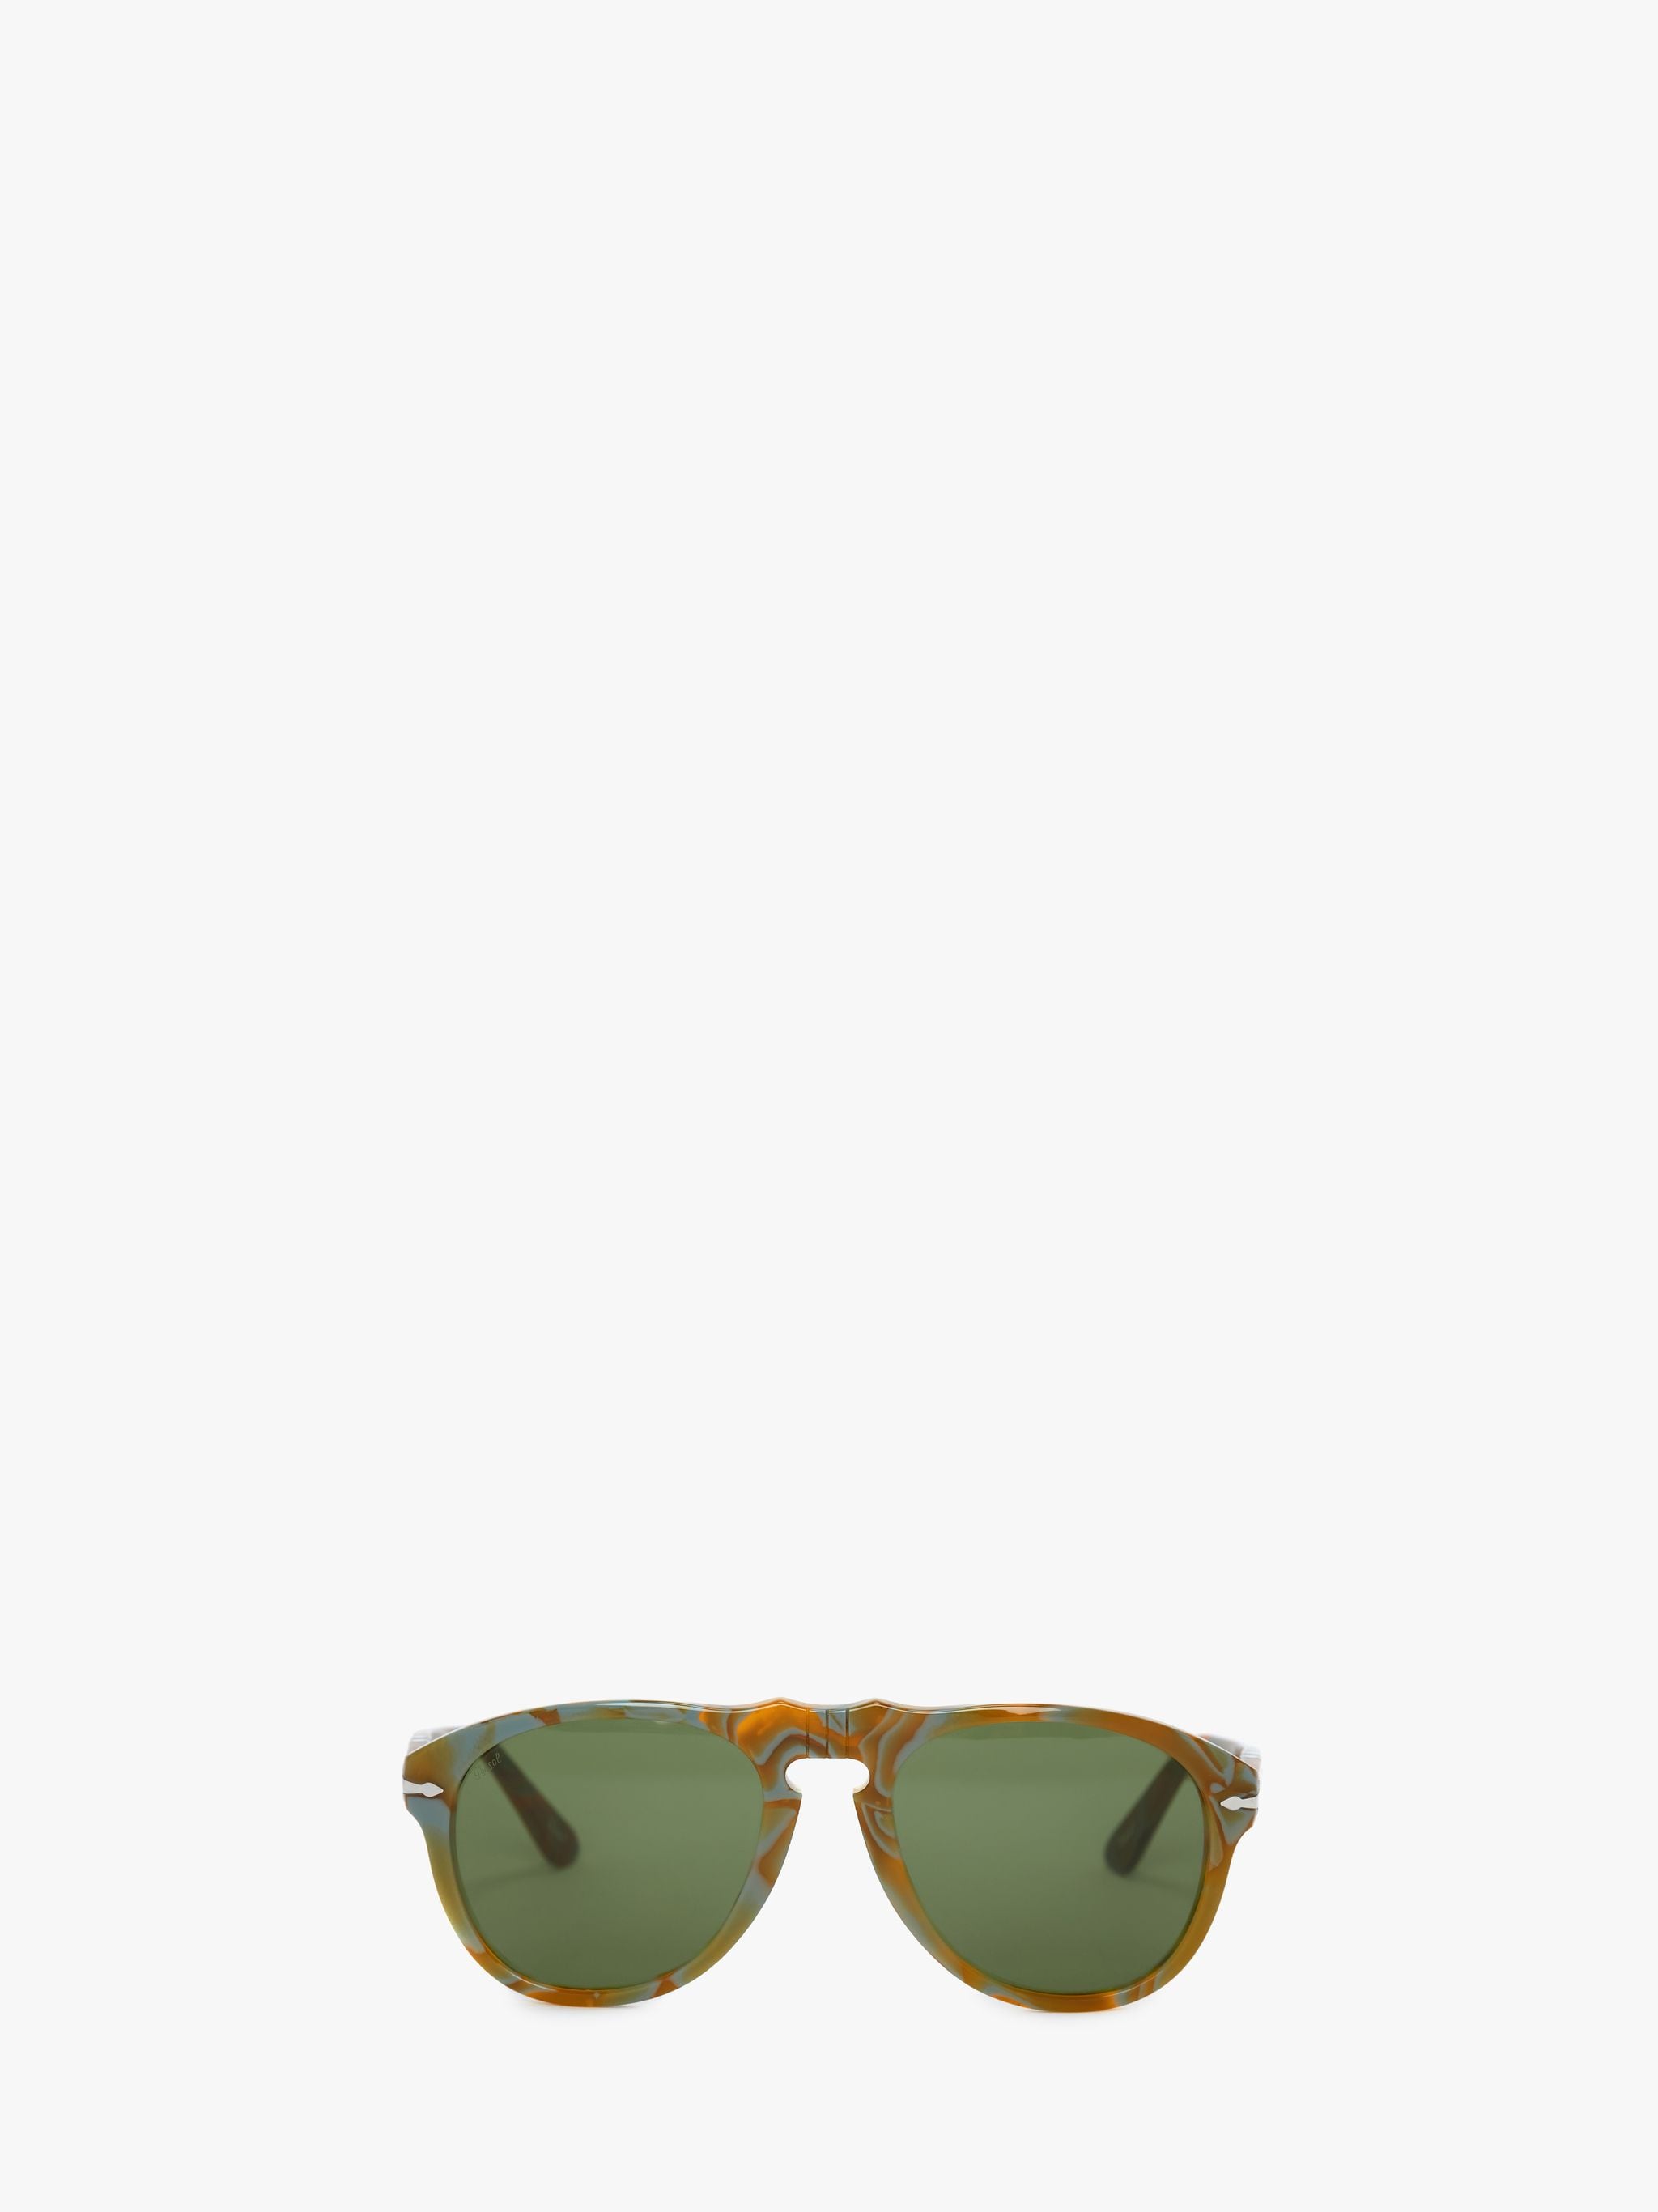 Солнцезащитные очки - авиатор JW Anderson, зеленый солнцезащитные очки lero авиаторы оправа металл градиентные золотой